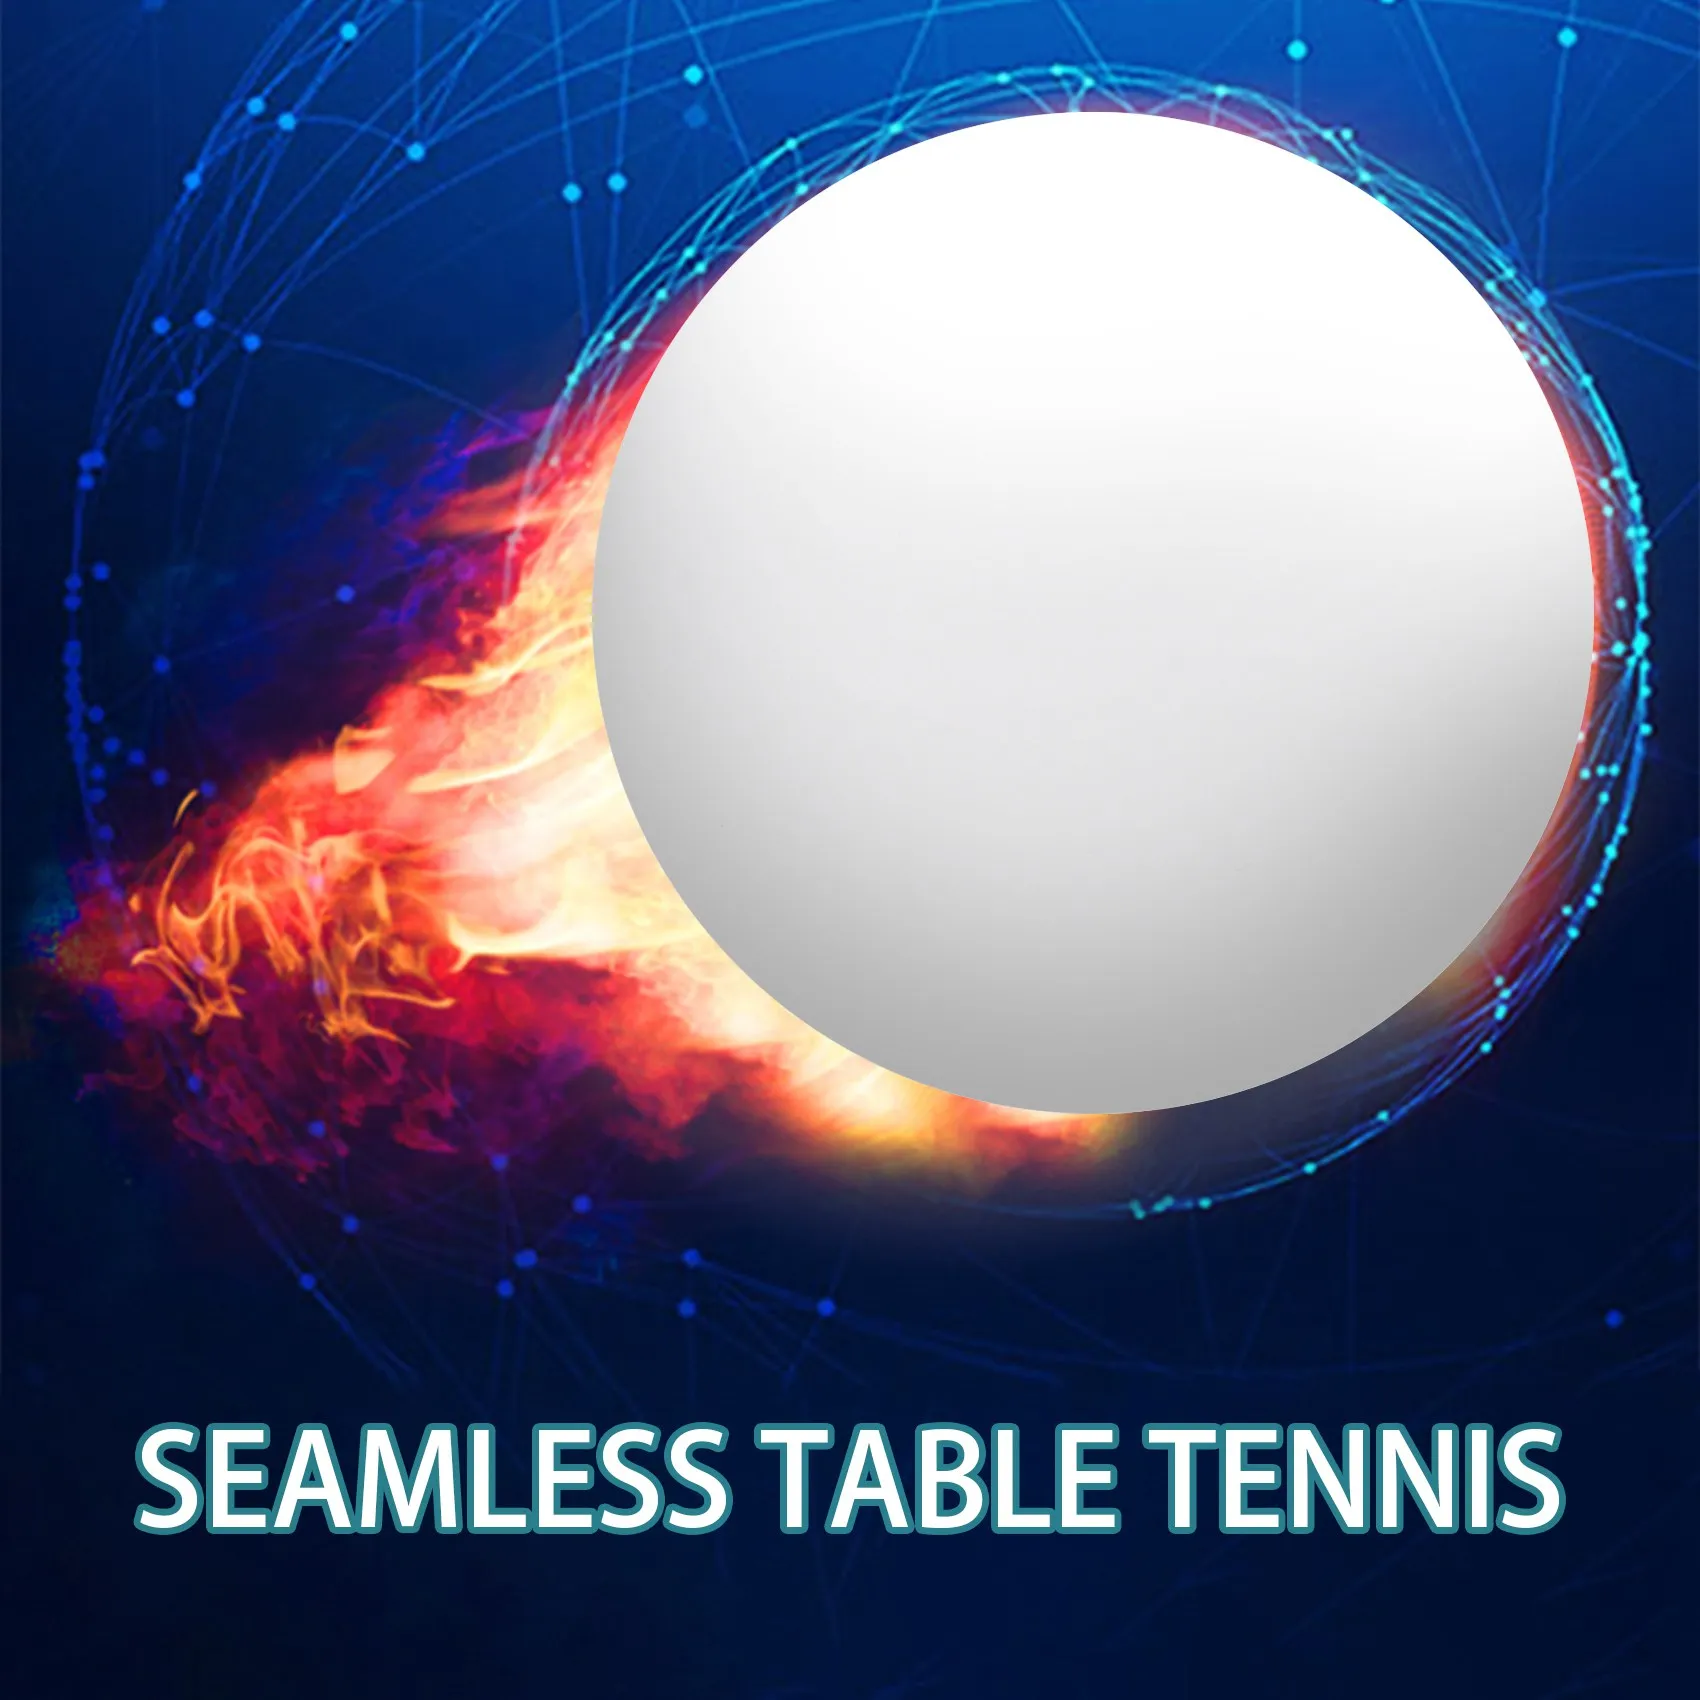 50 - חבילת פרימיום פינג פונג השתלמות שולחן כדור קל משקל עמיד חלקה כדורי לבן . ' - ' . 3